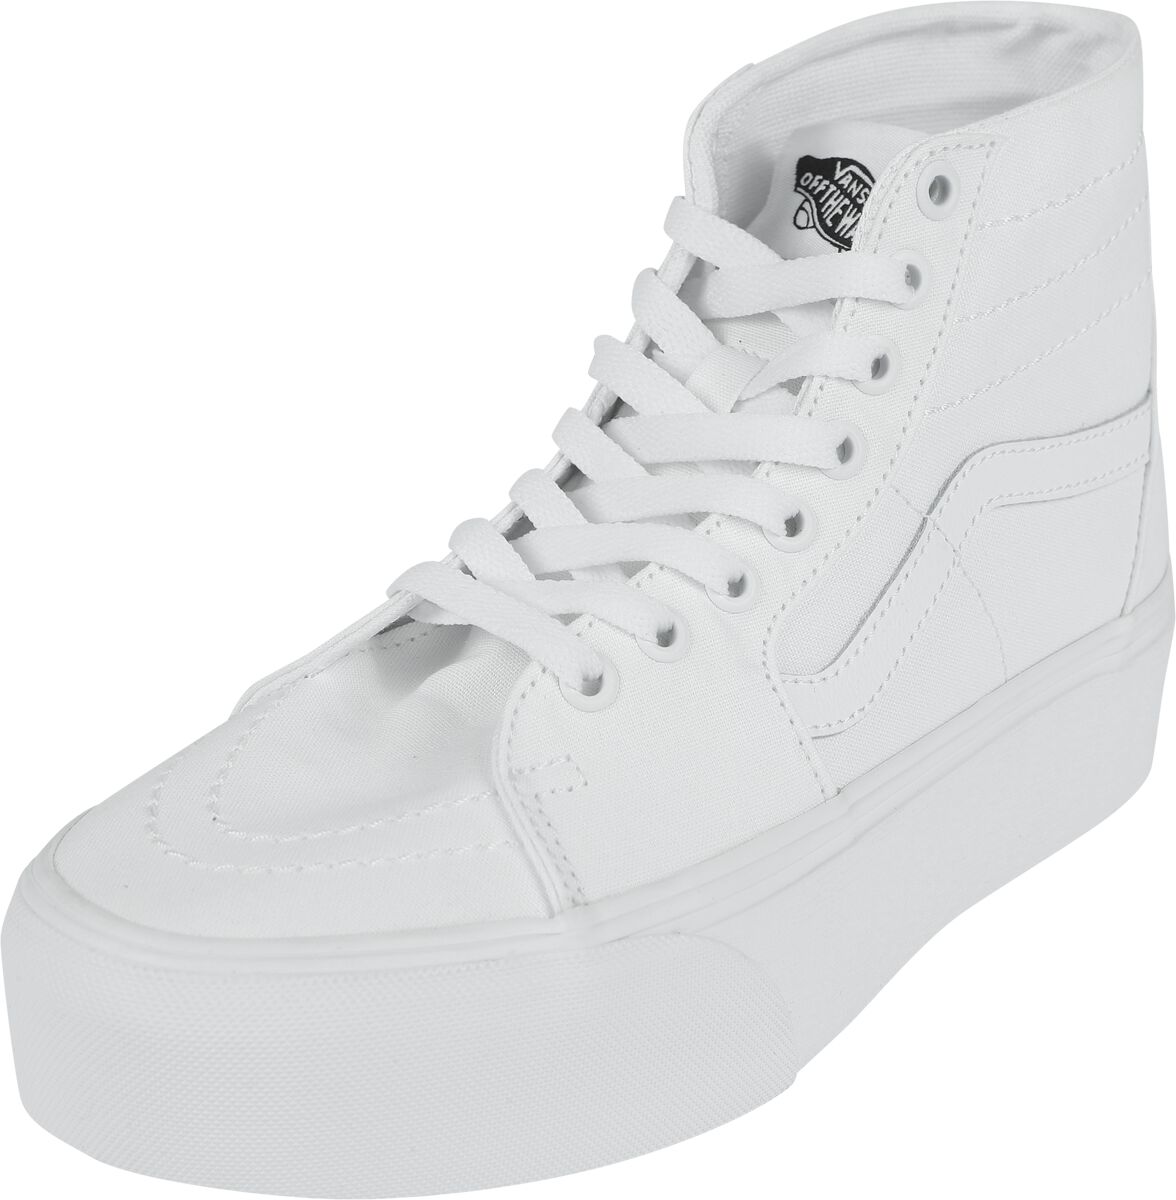 Vans Sneaker high - SK8-Hi Tapered Stackform Canvas True White - EU37 bis EU41 - für Damen - Größe EU37 - weiß